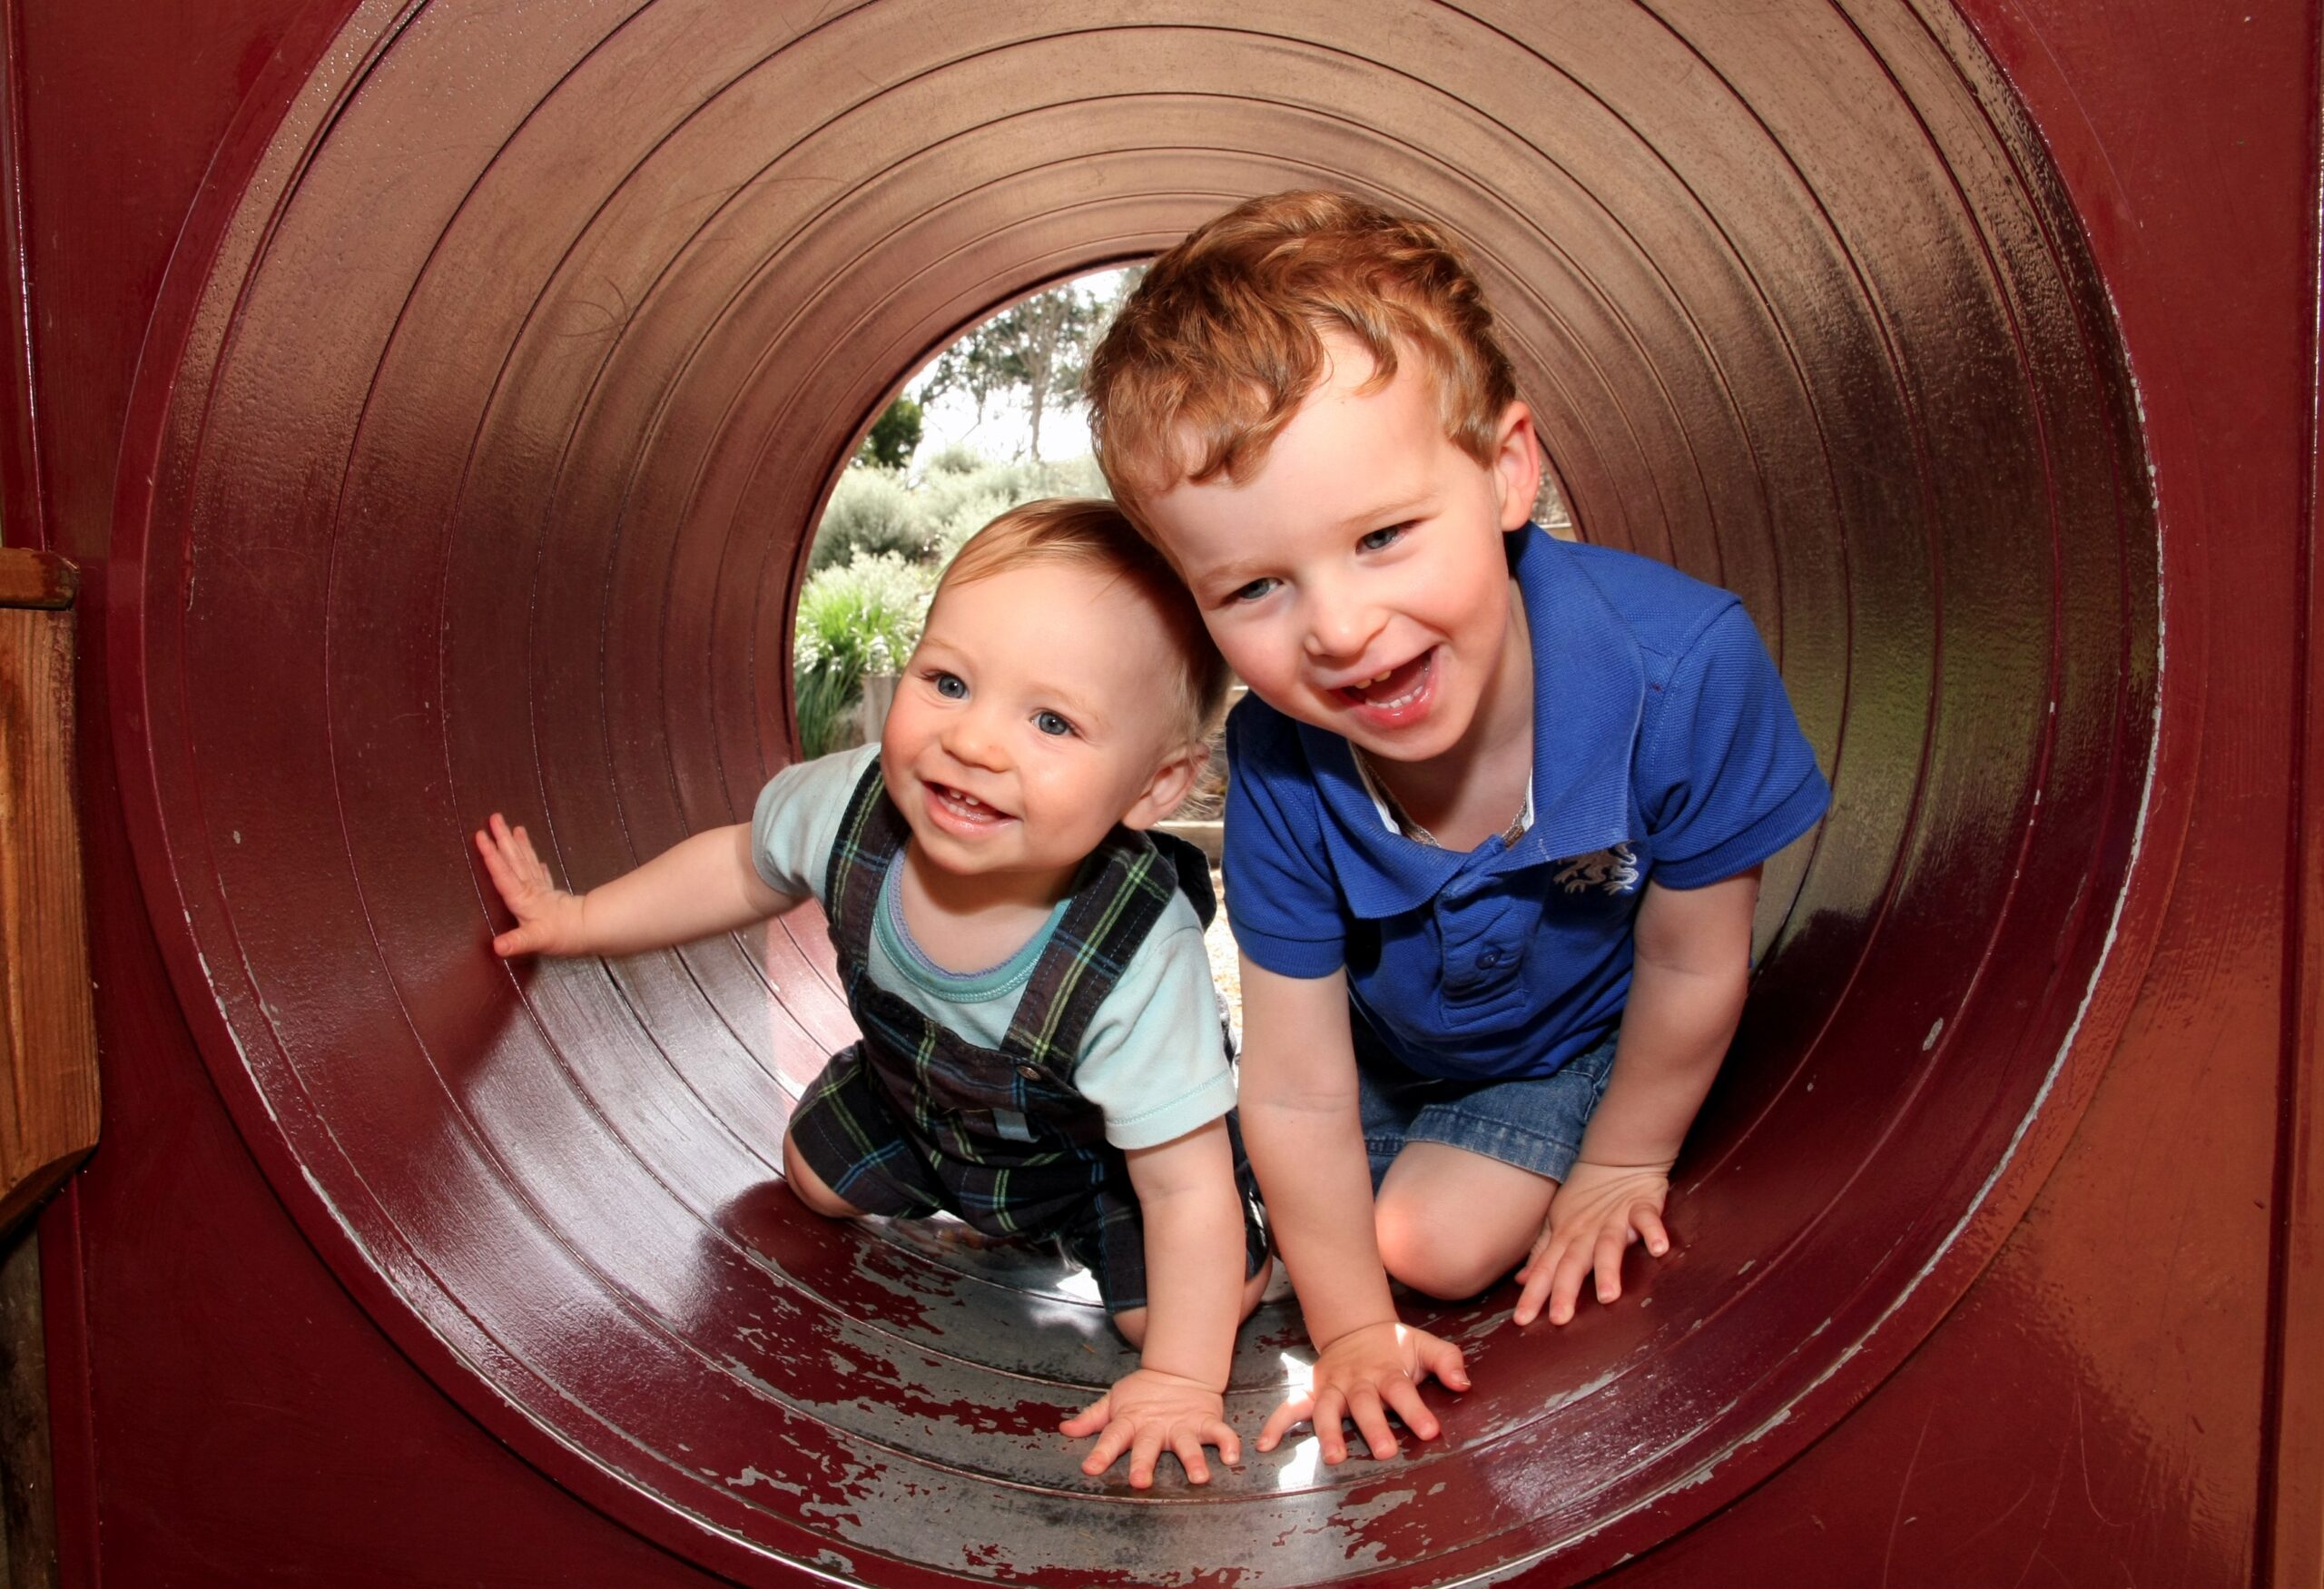 Children playing inside tube